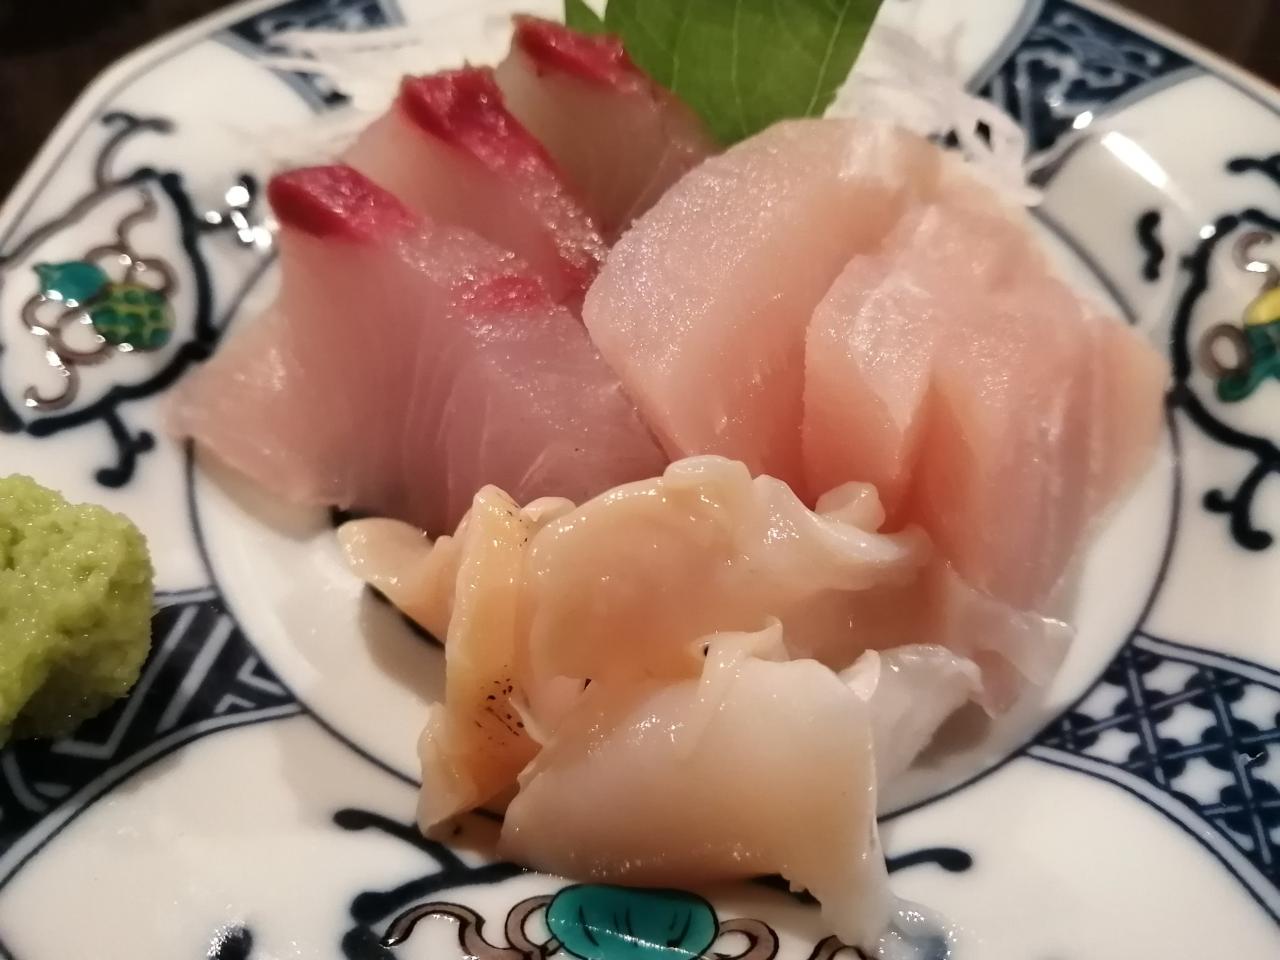 まんぷくメシ バイ貝の刺身の作り方 富山湾の幸 アユ バイ貝 レシピ 凛とした暮らし 凛々と